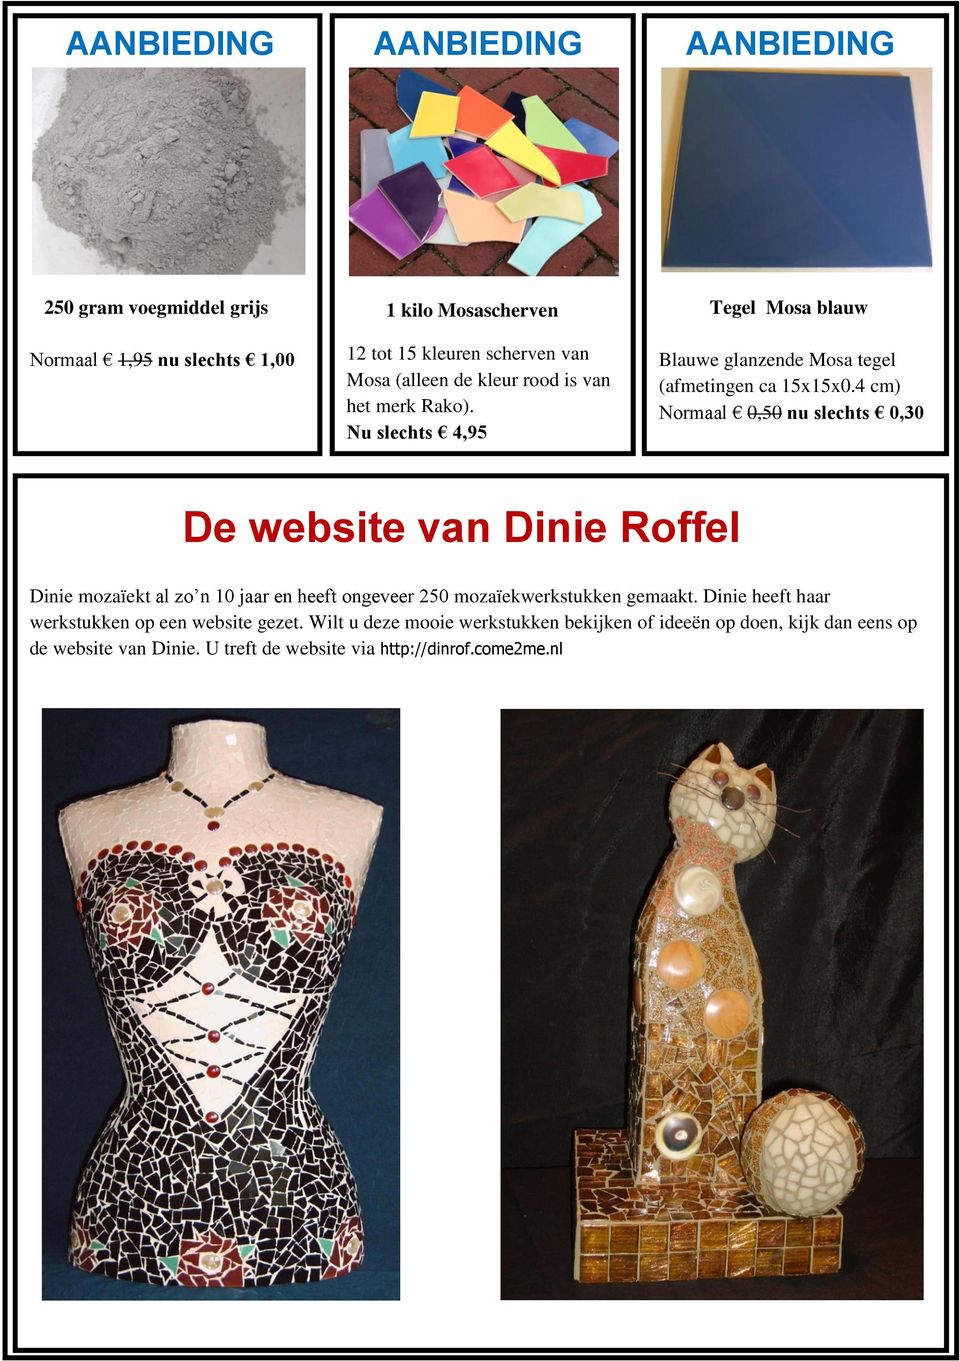 4 cm) Normaal 0,50 nu slechts 0,30 De website van Dinie Roffel Dinie mozaïekt al zo n 10 jaar en heeft ongeveer 250 mozaïekwerkstukken gemaakt.